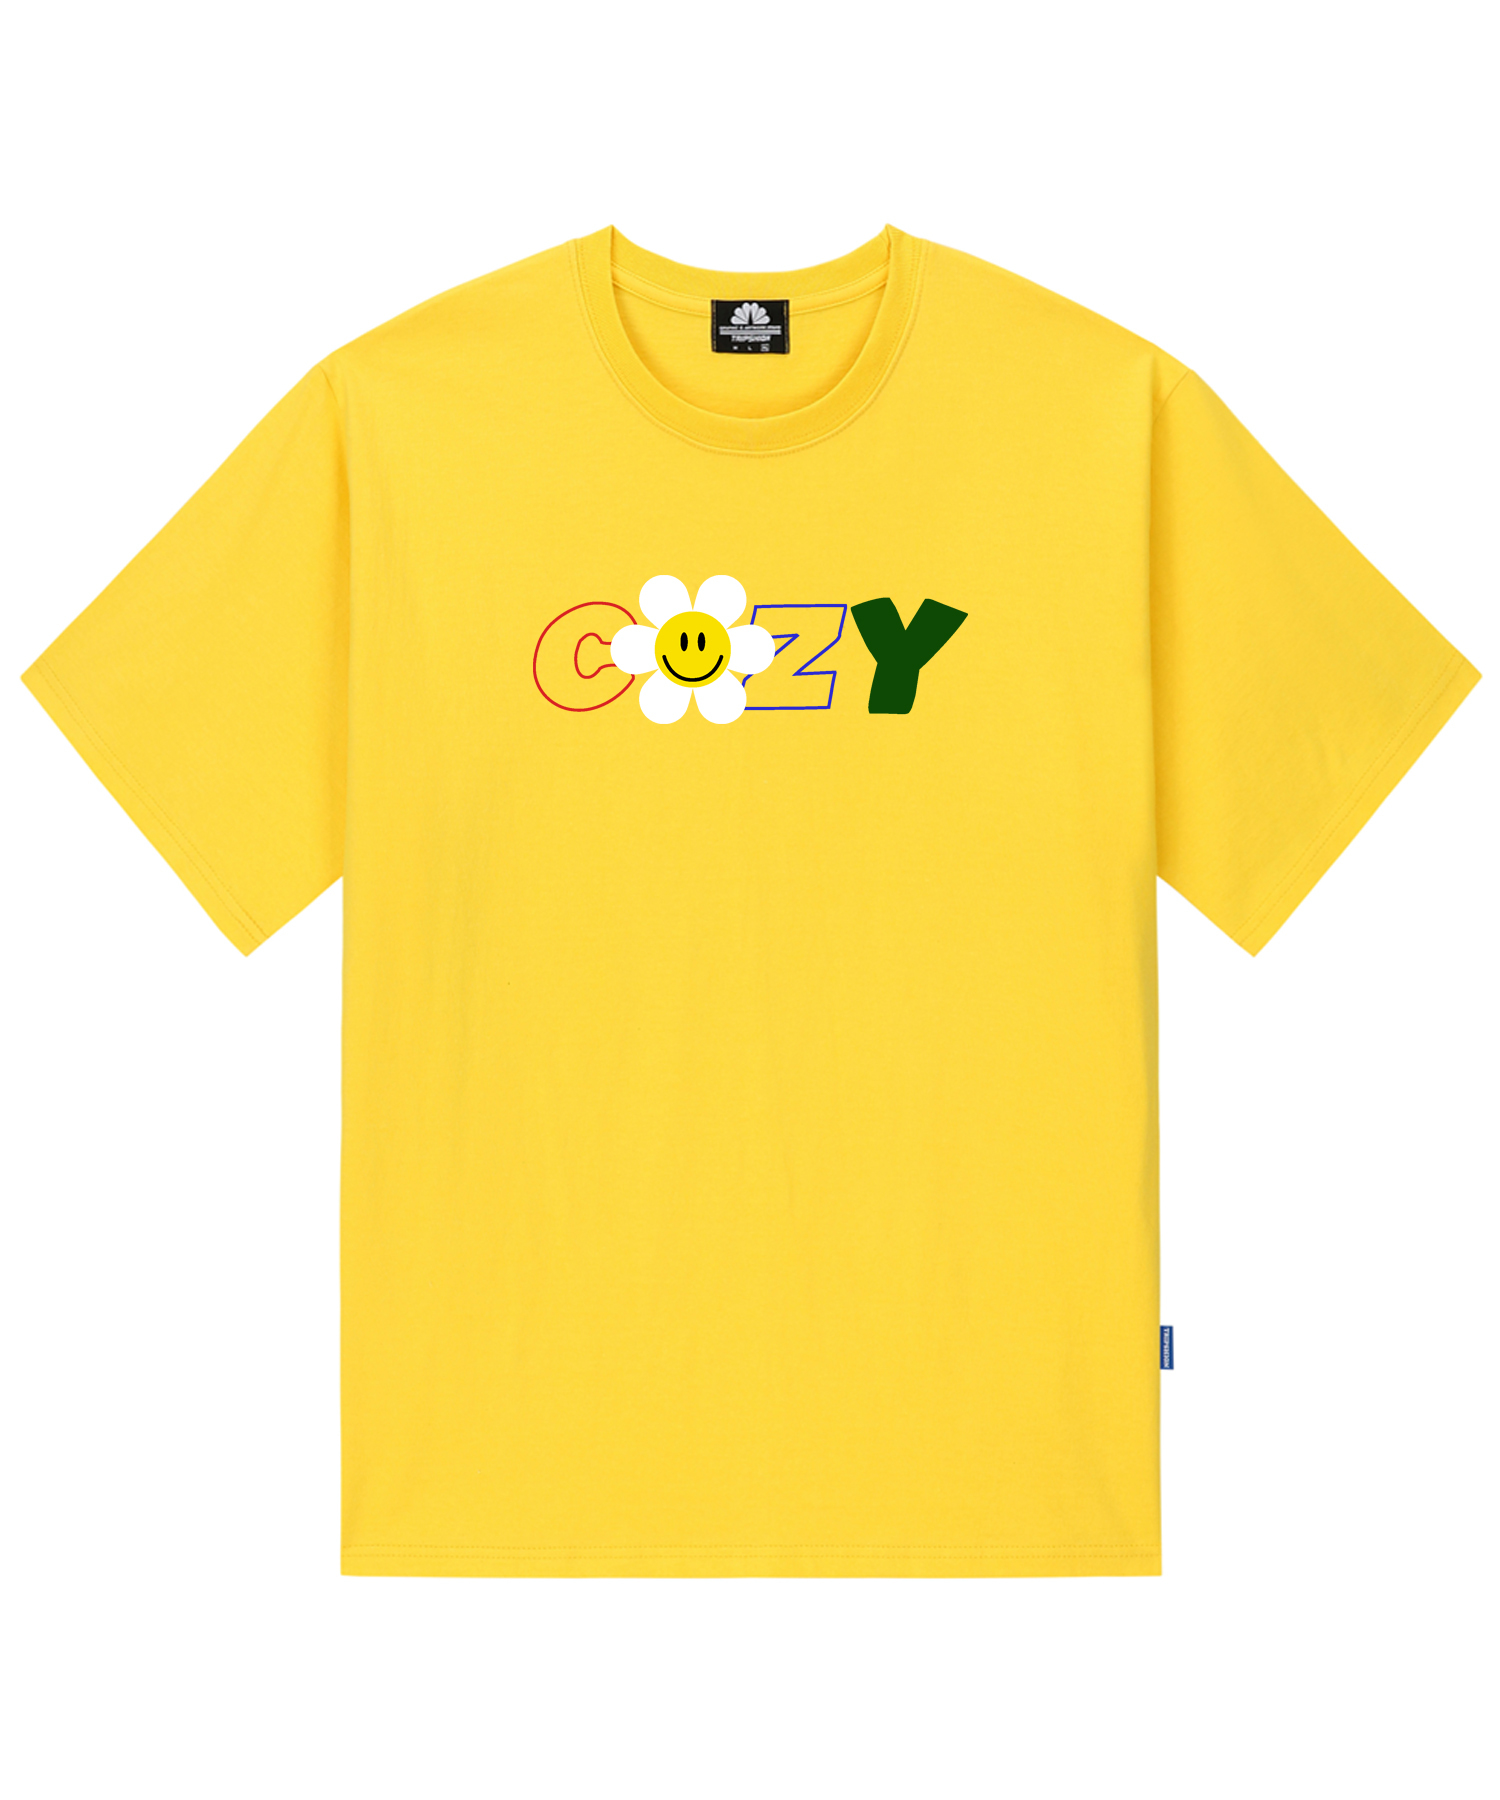 COZY DAISY T-SHIRTS - YELLOW